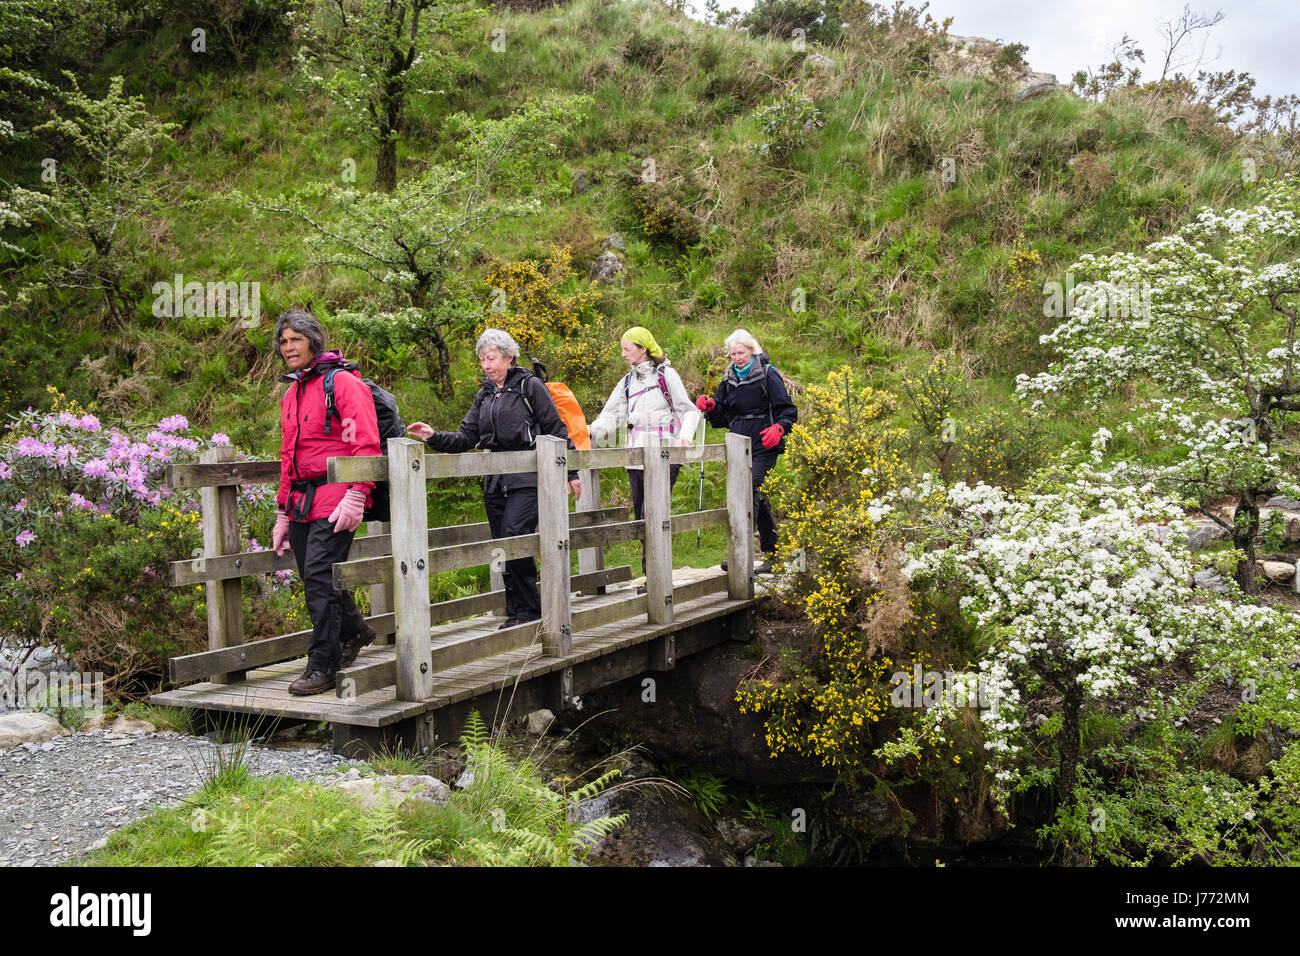 Randonnée Les randonneurs à travers une passerelle sur un pays à pied au printemps. Mcg Dyli, Nant Gwynant, Gwynedd, au nord du Pays de Galles, Royaume-Uni, Angleterre Banque D'Images